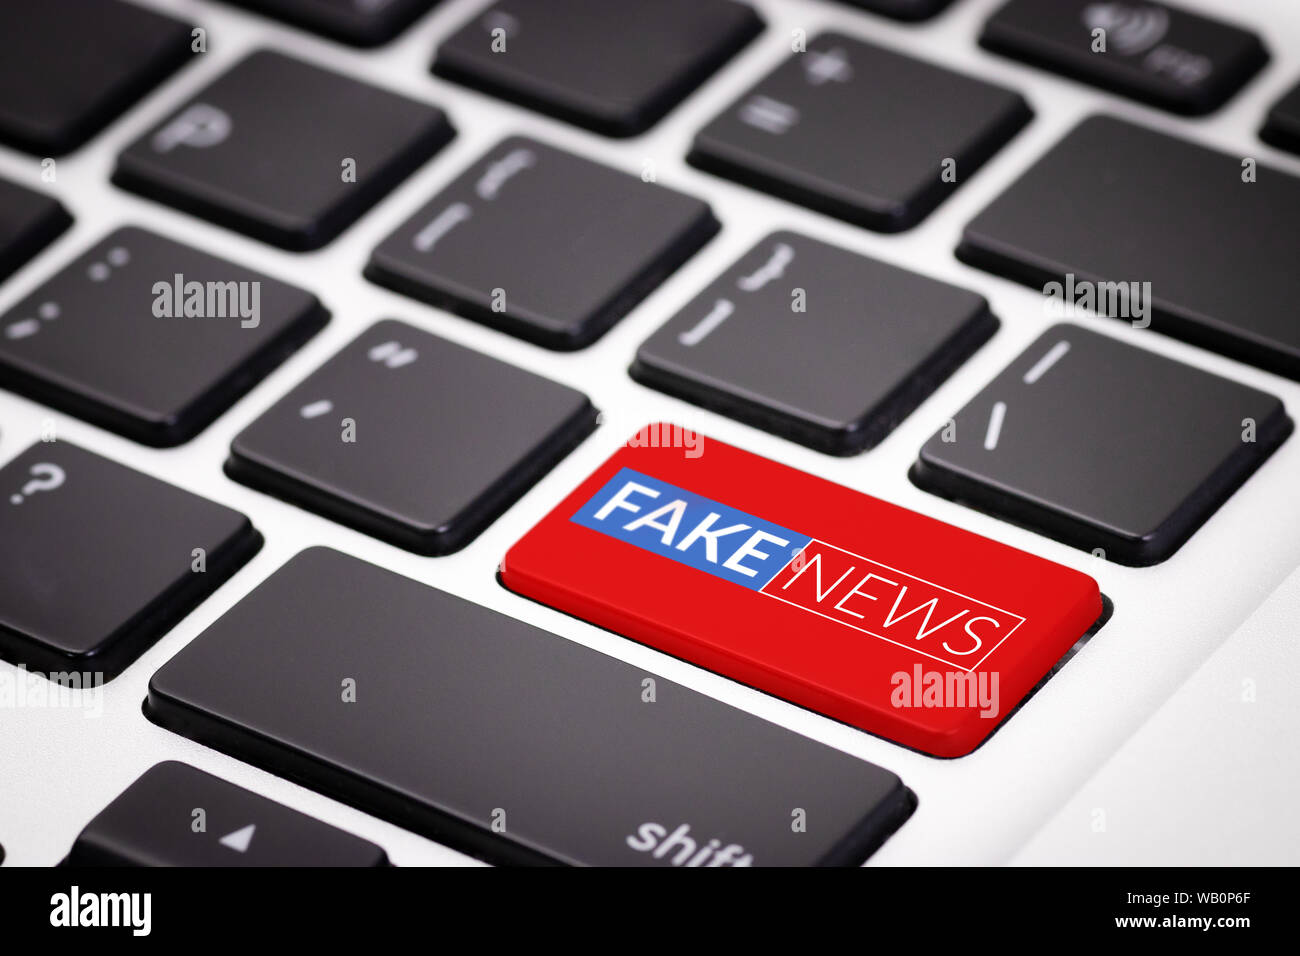 Bouton rouge fake news sur clavier d'ordinateur portable. de fausses nouvelles sur internet en concept d'âge numérique moderne Banque D'Images